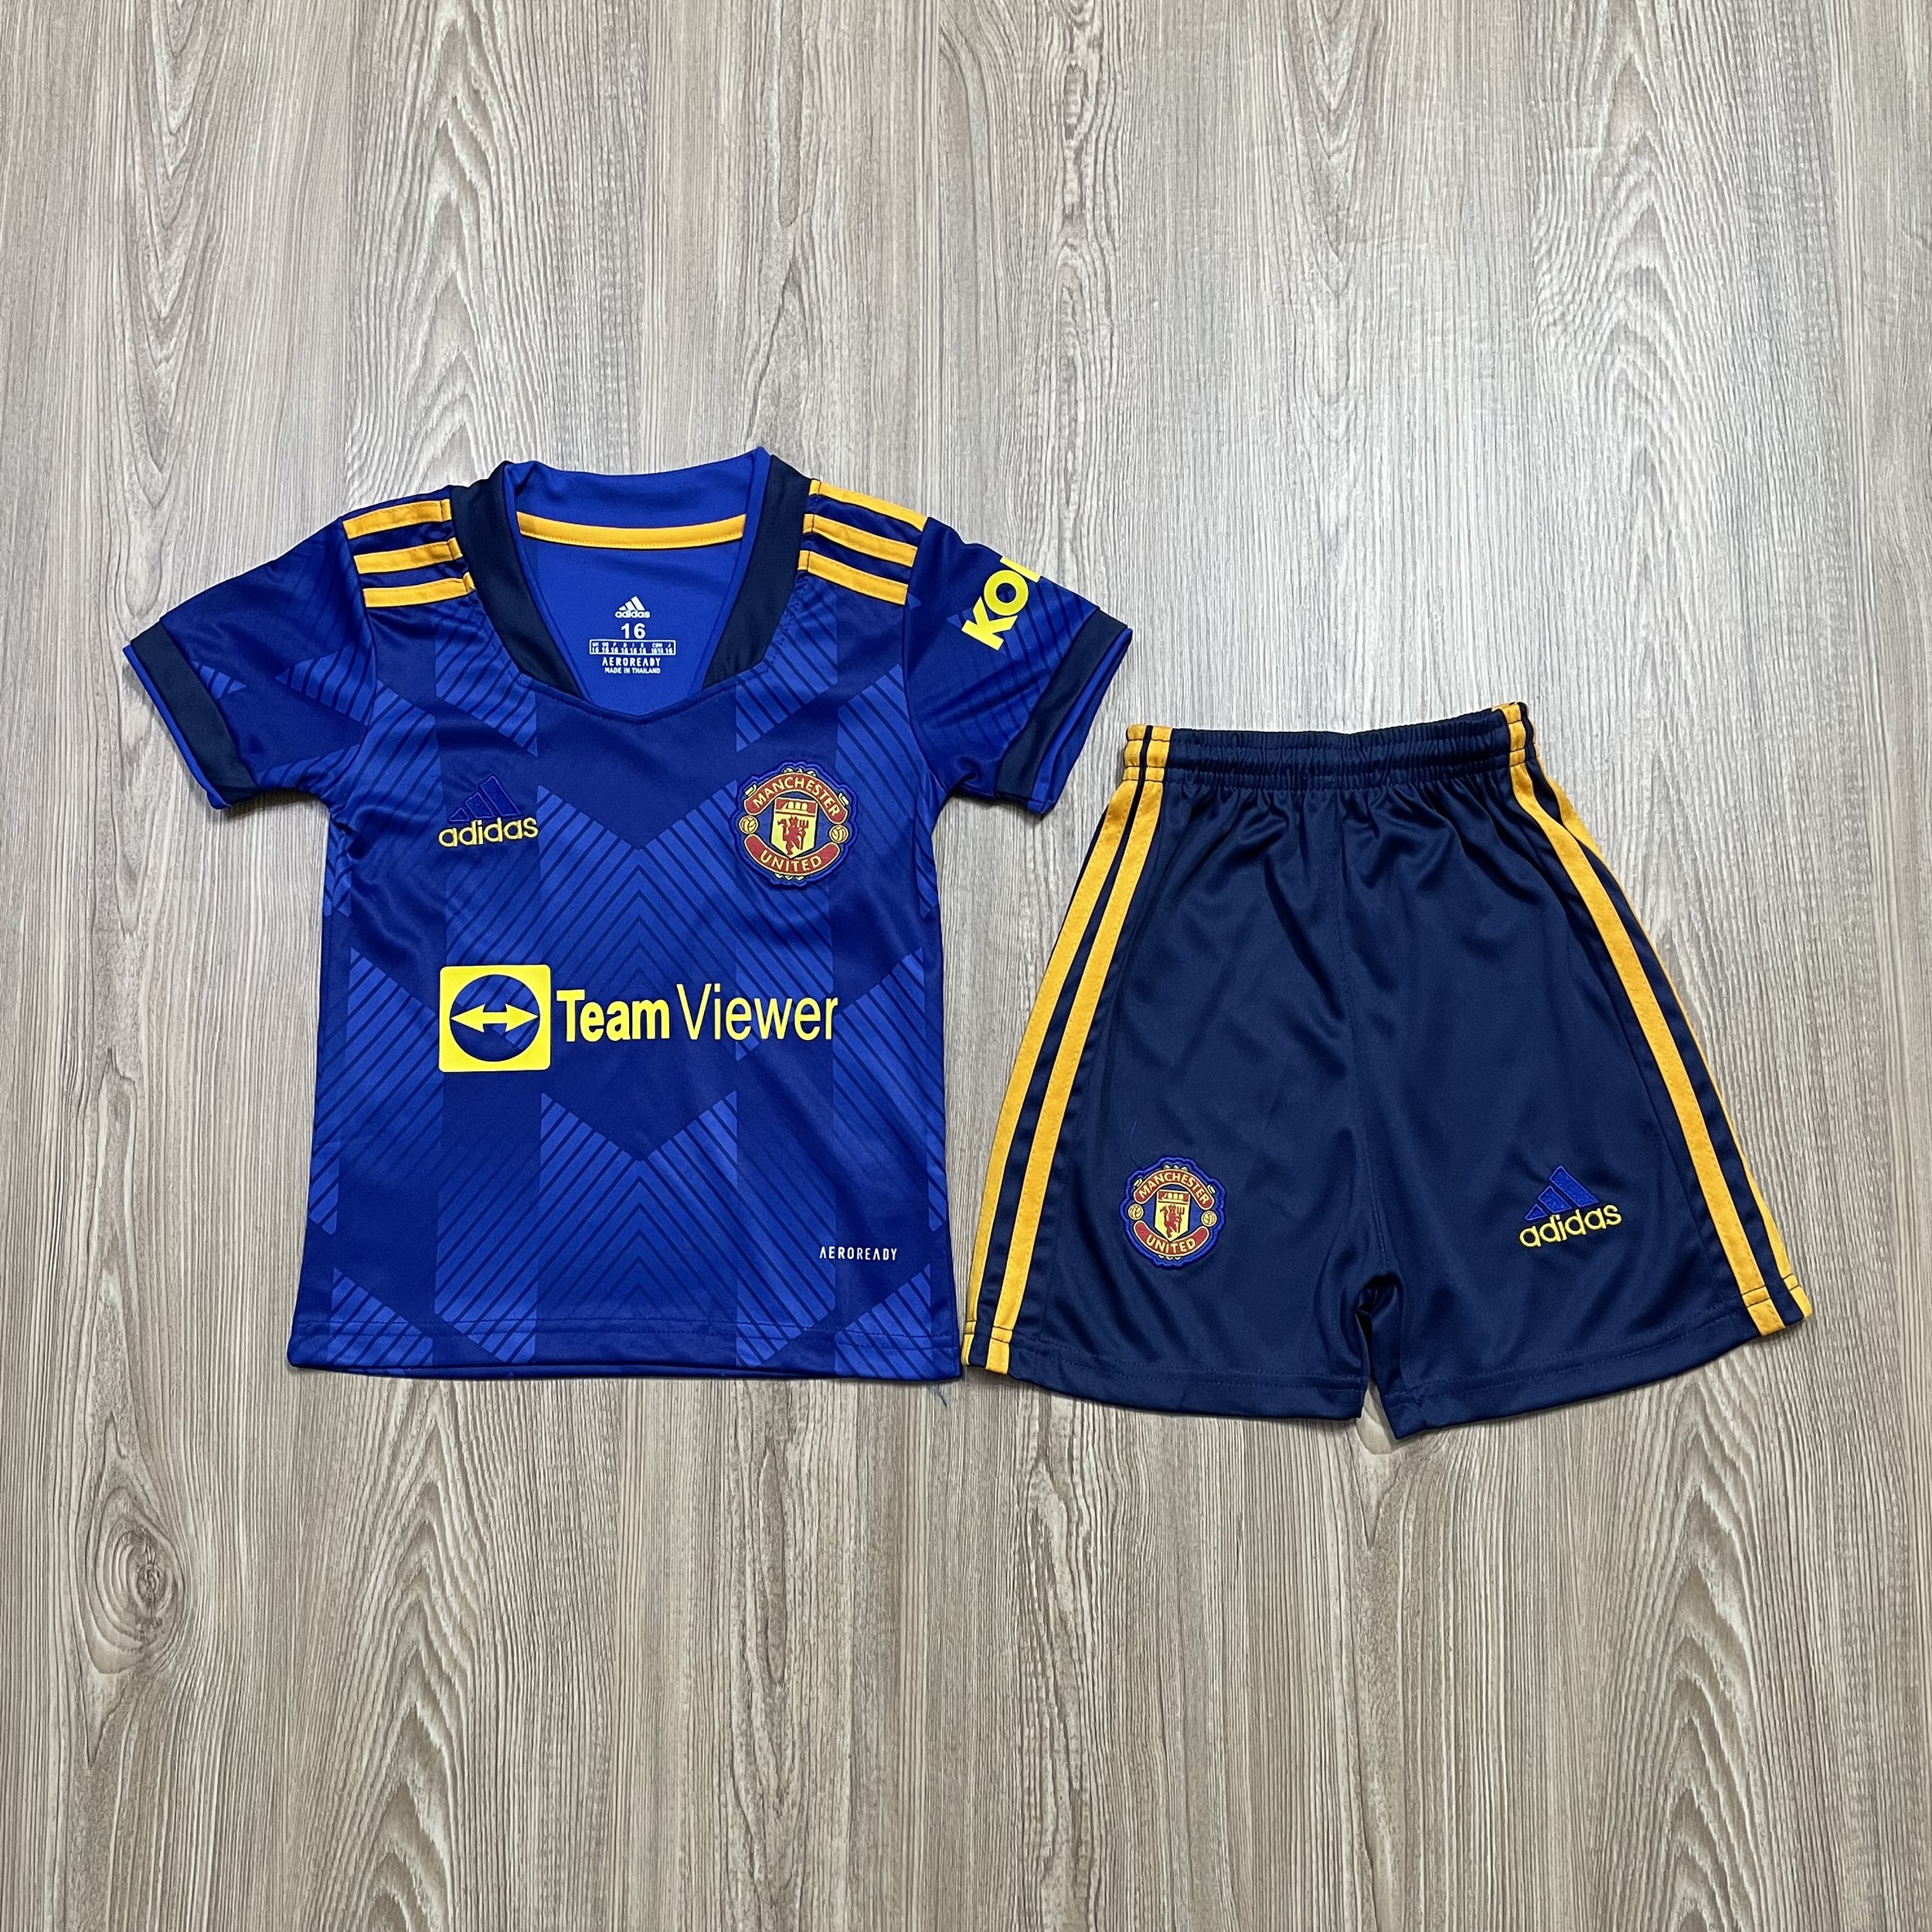 ชุดบอลเด็ก ManU ชุดกีฬาเด็กทีม เสื้อทีมเชลซี ซื้อครั้งเดียวได้ทั้งชุด (เสื้อ+กางเกง) ตัวเดียวในราคาส่ง สินค้าเกรด-A